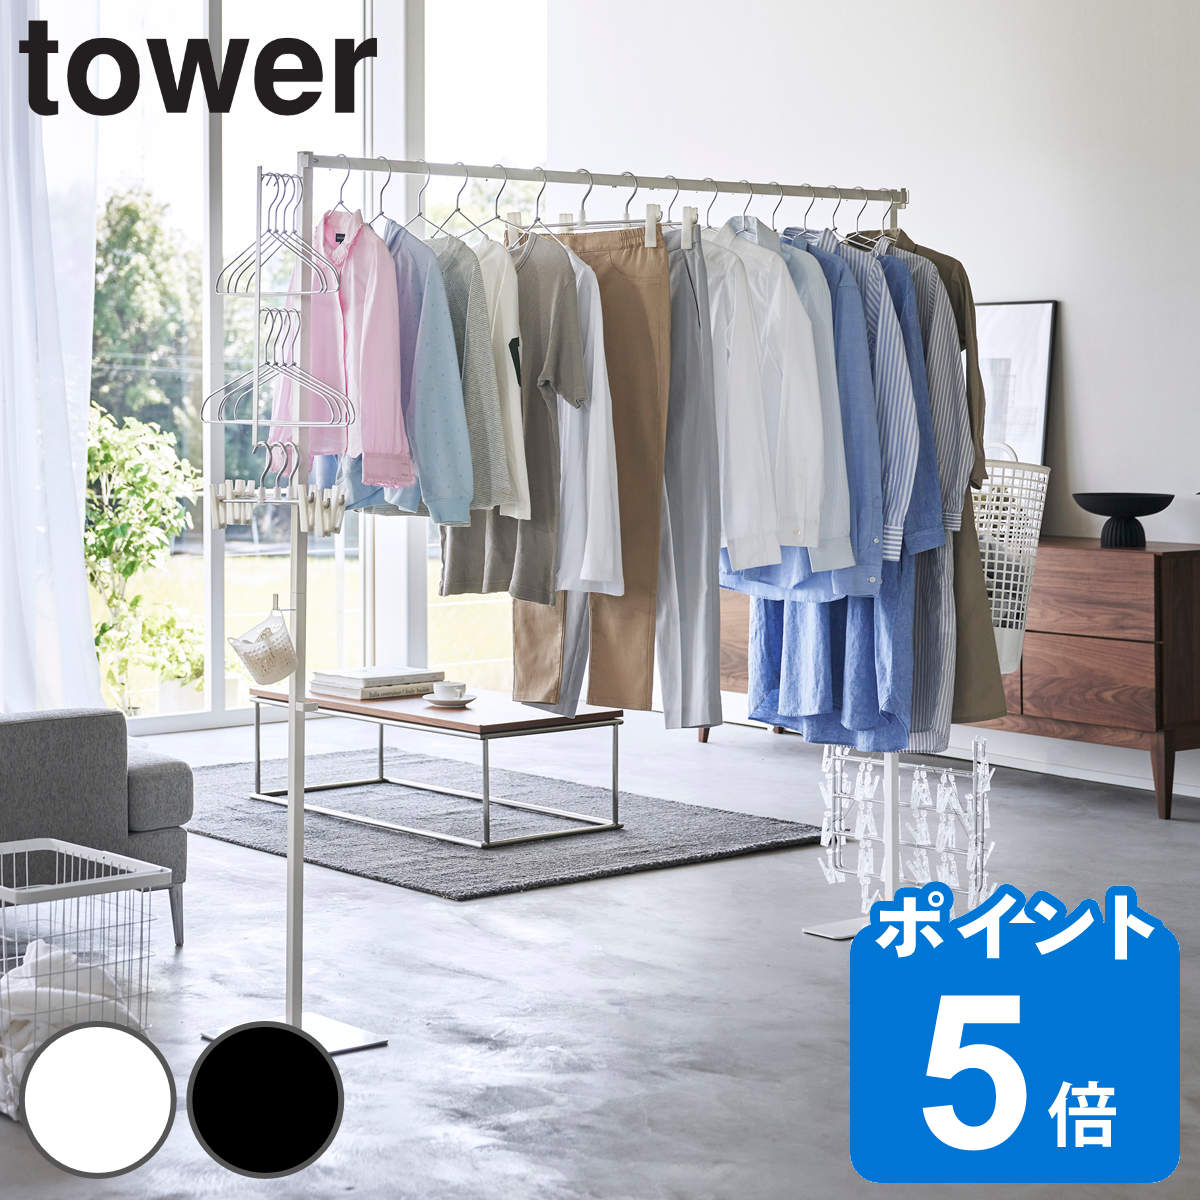 山崎実業 tower 折り畳み室内物干し タワー